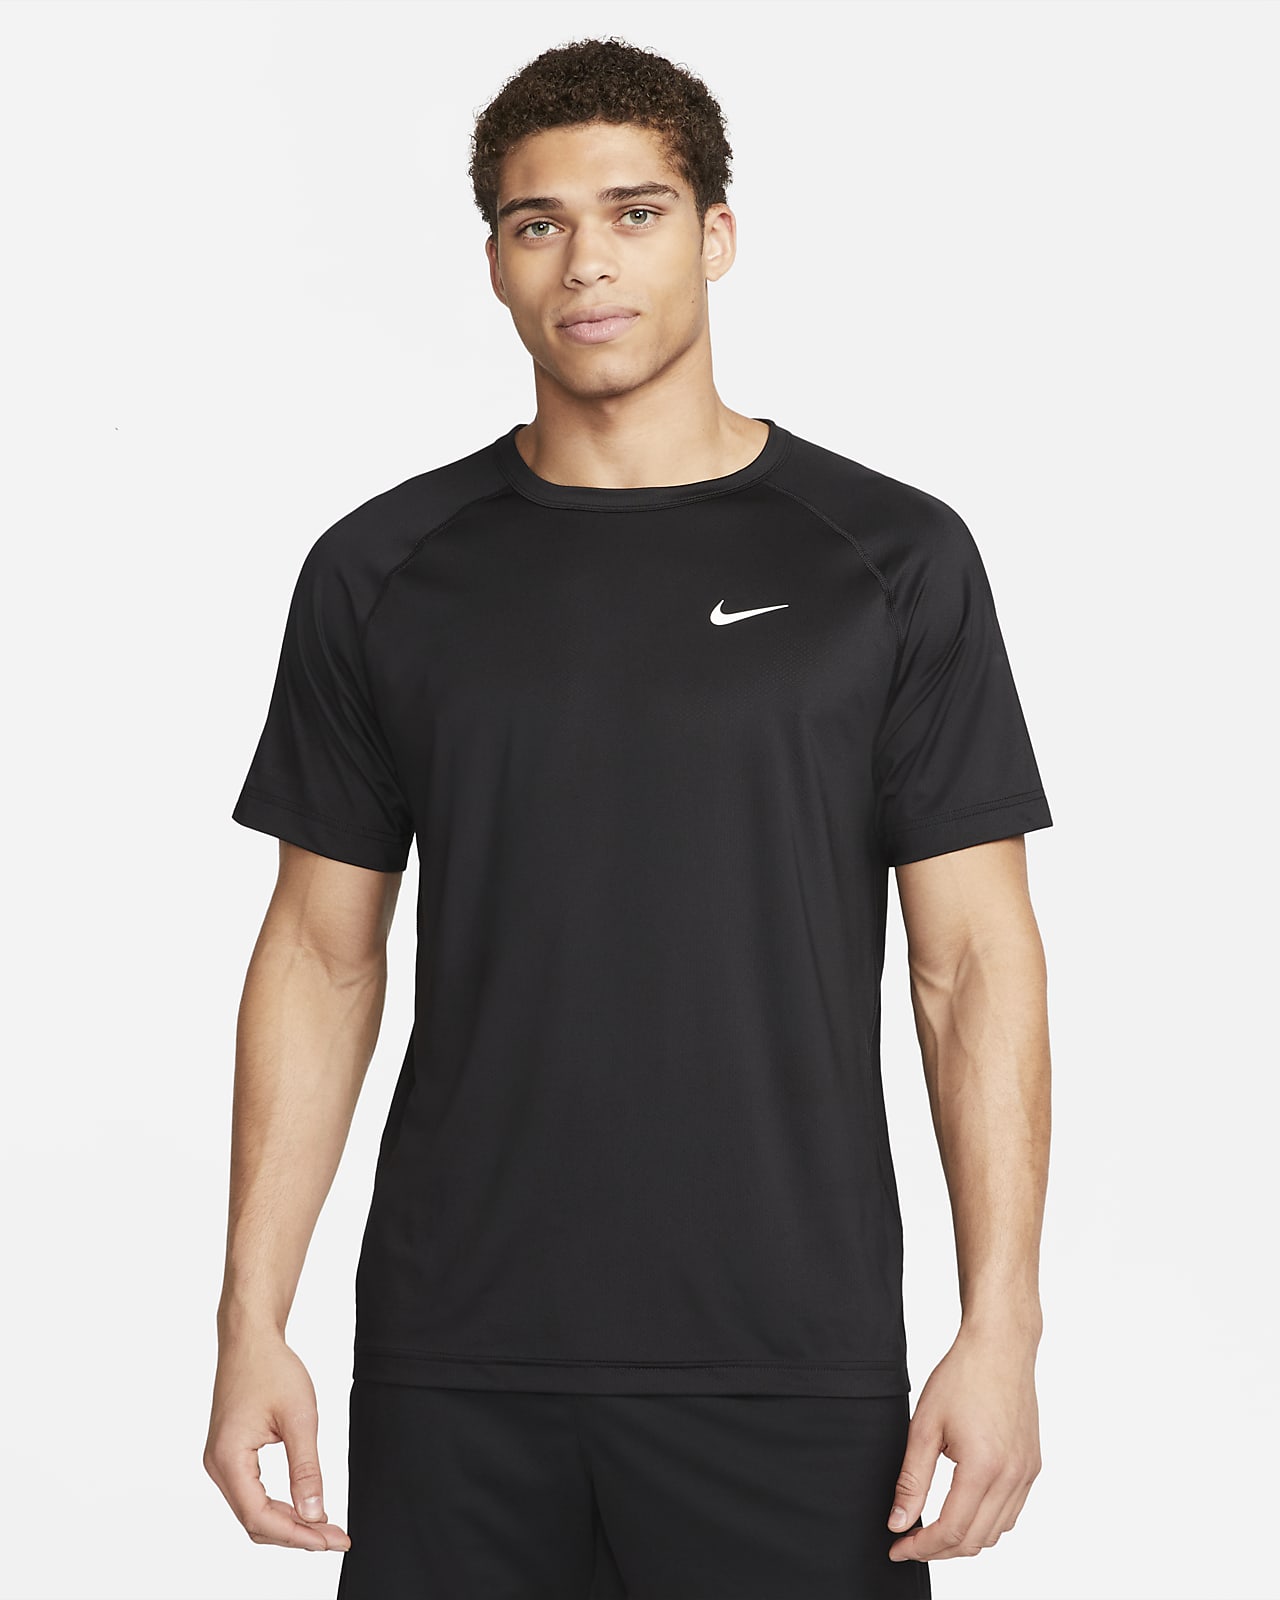 Ανδρική κοντομάνικη μπλούζα fitness Dri-FIT Nike Ready